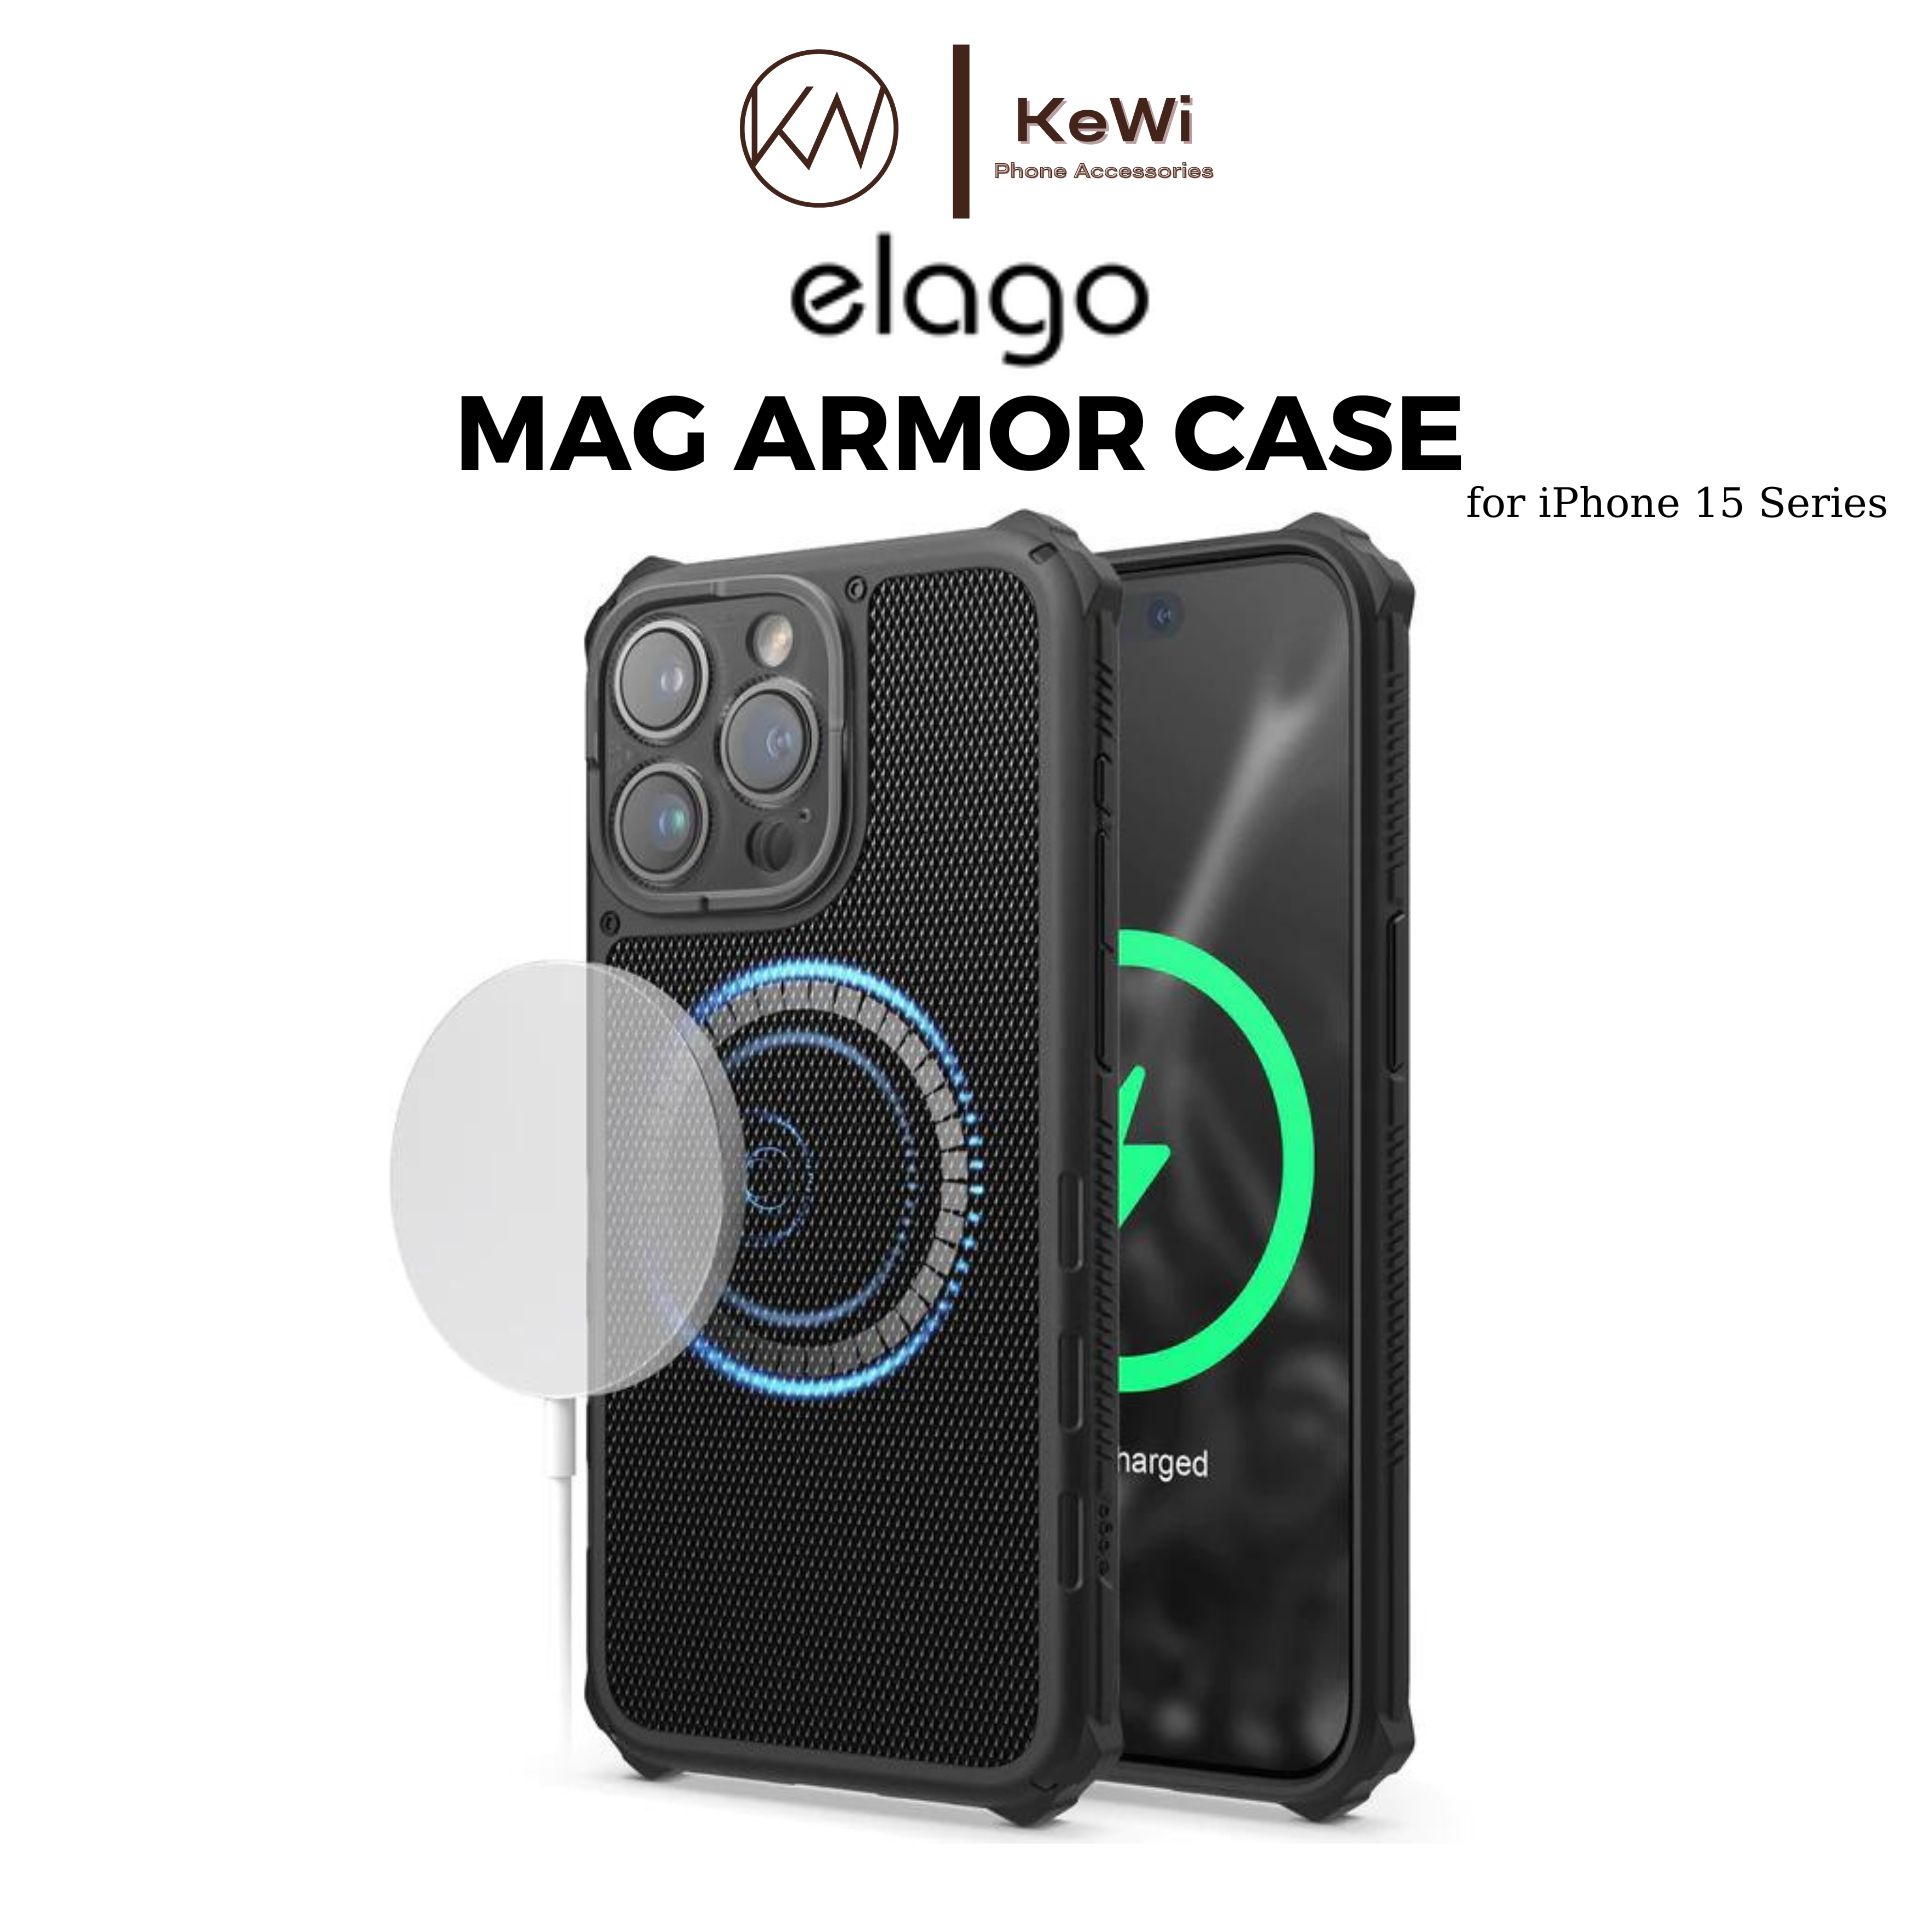 Ốp Lưng Chống Sốc Sạc Không Dây elago Dành Cho iPhone 15 Pro Max / iPhone 15 Pro elago Mag Armor Case - Hàng Chính Hãng